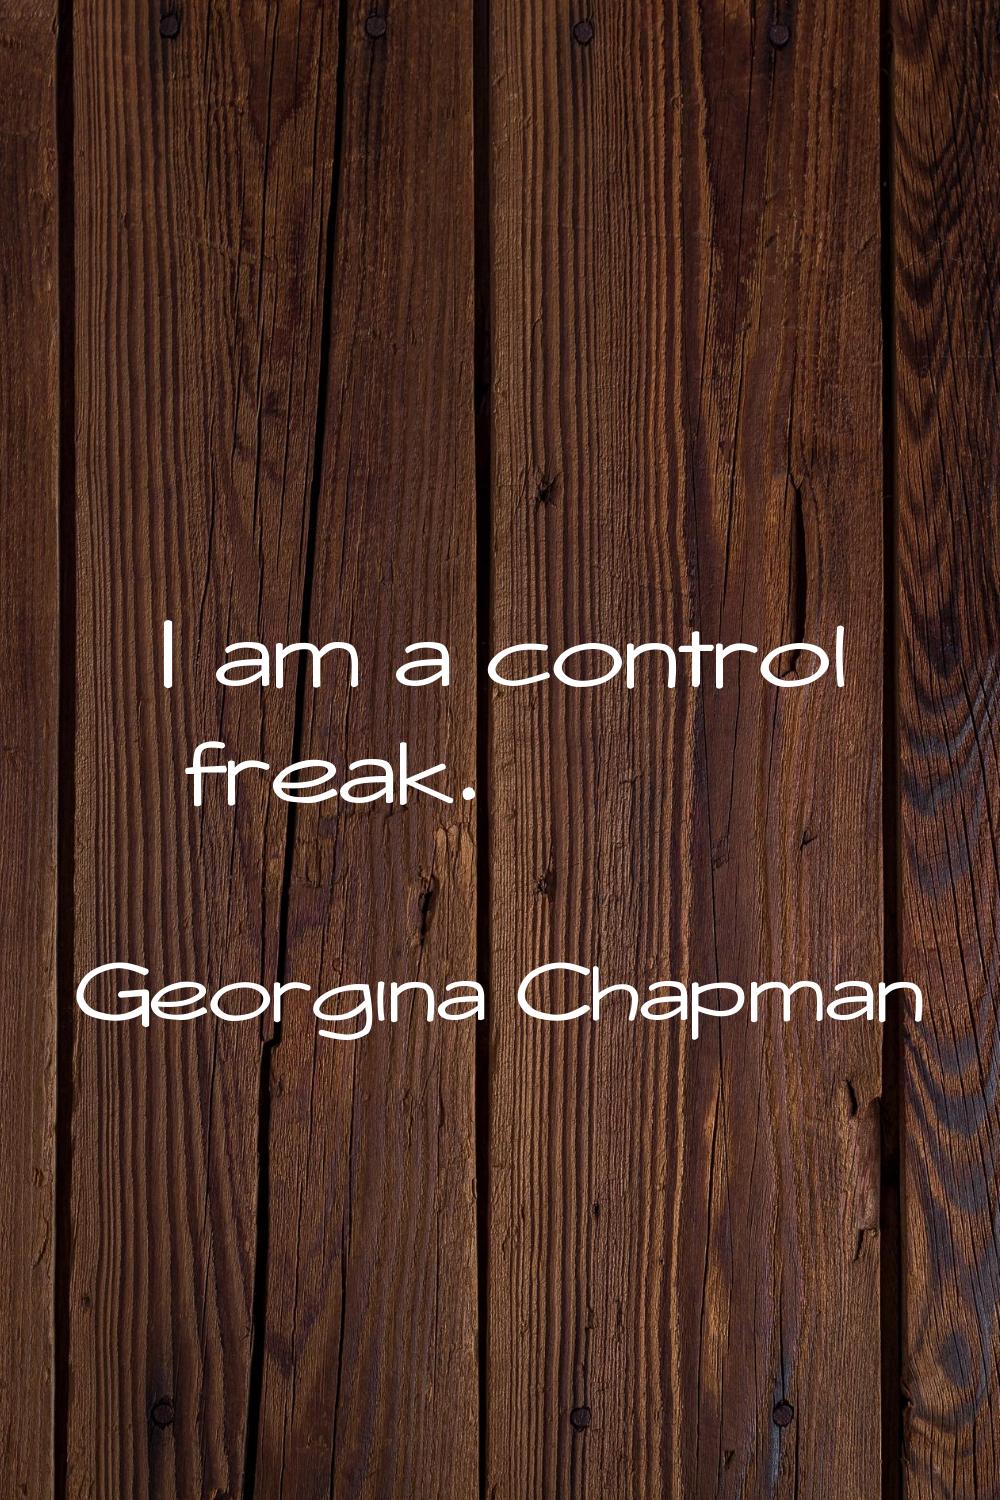 I am a control freak.